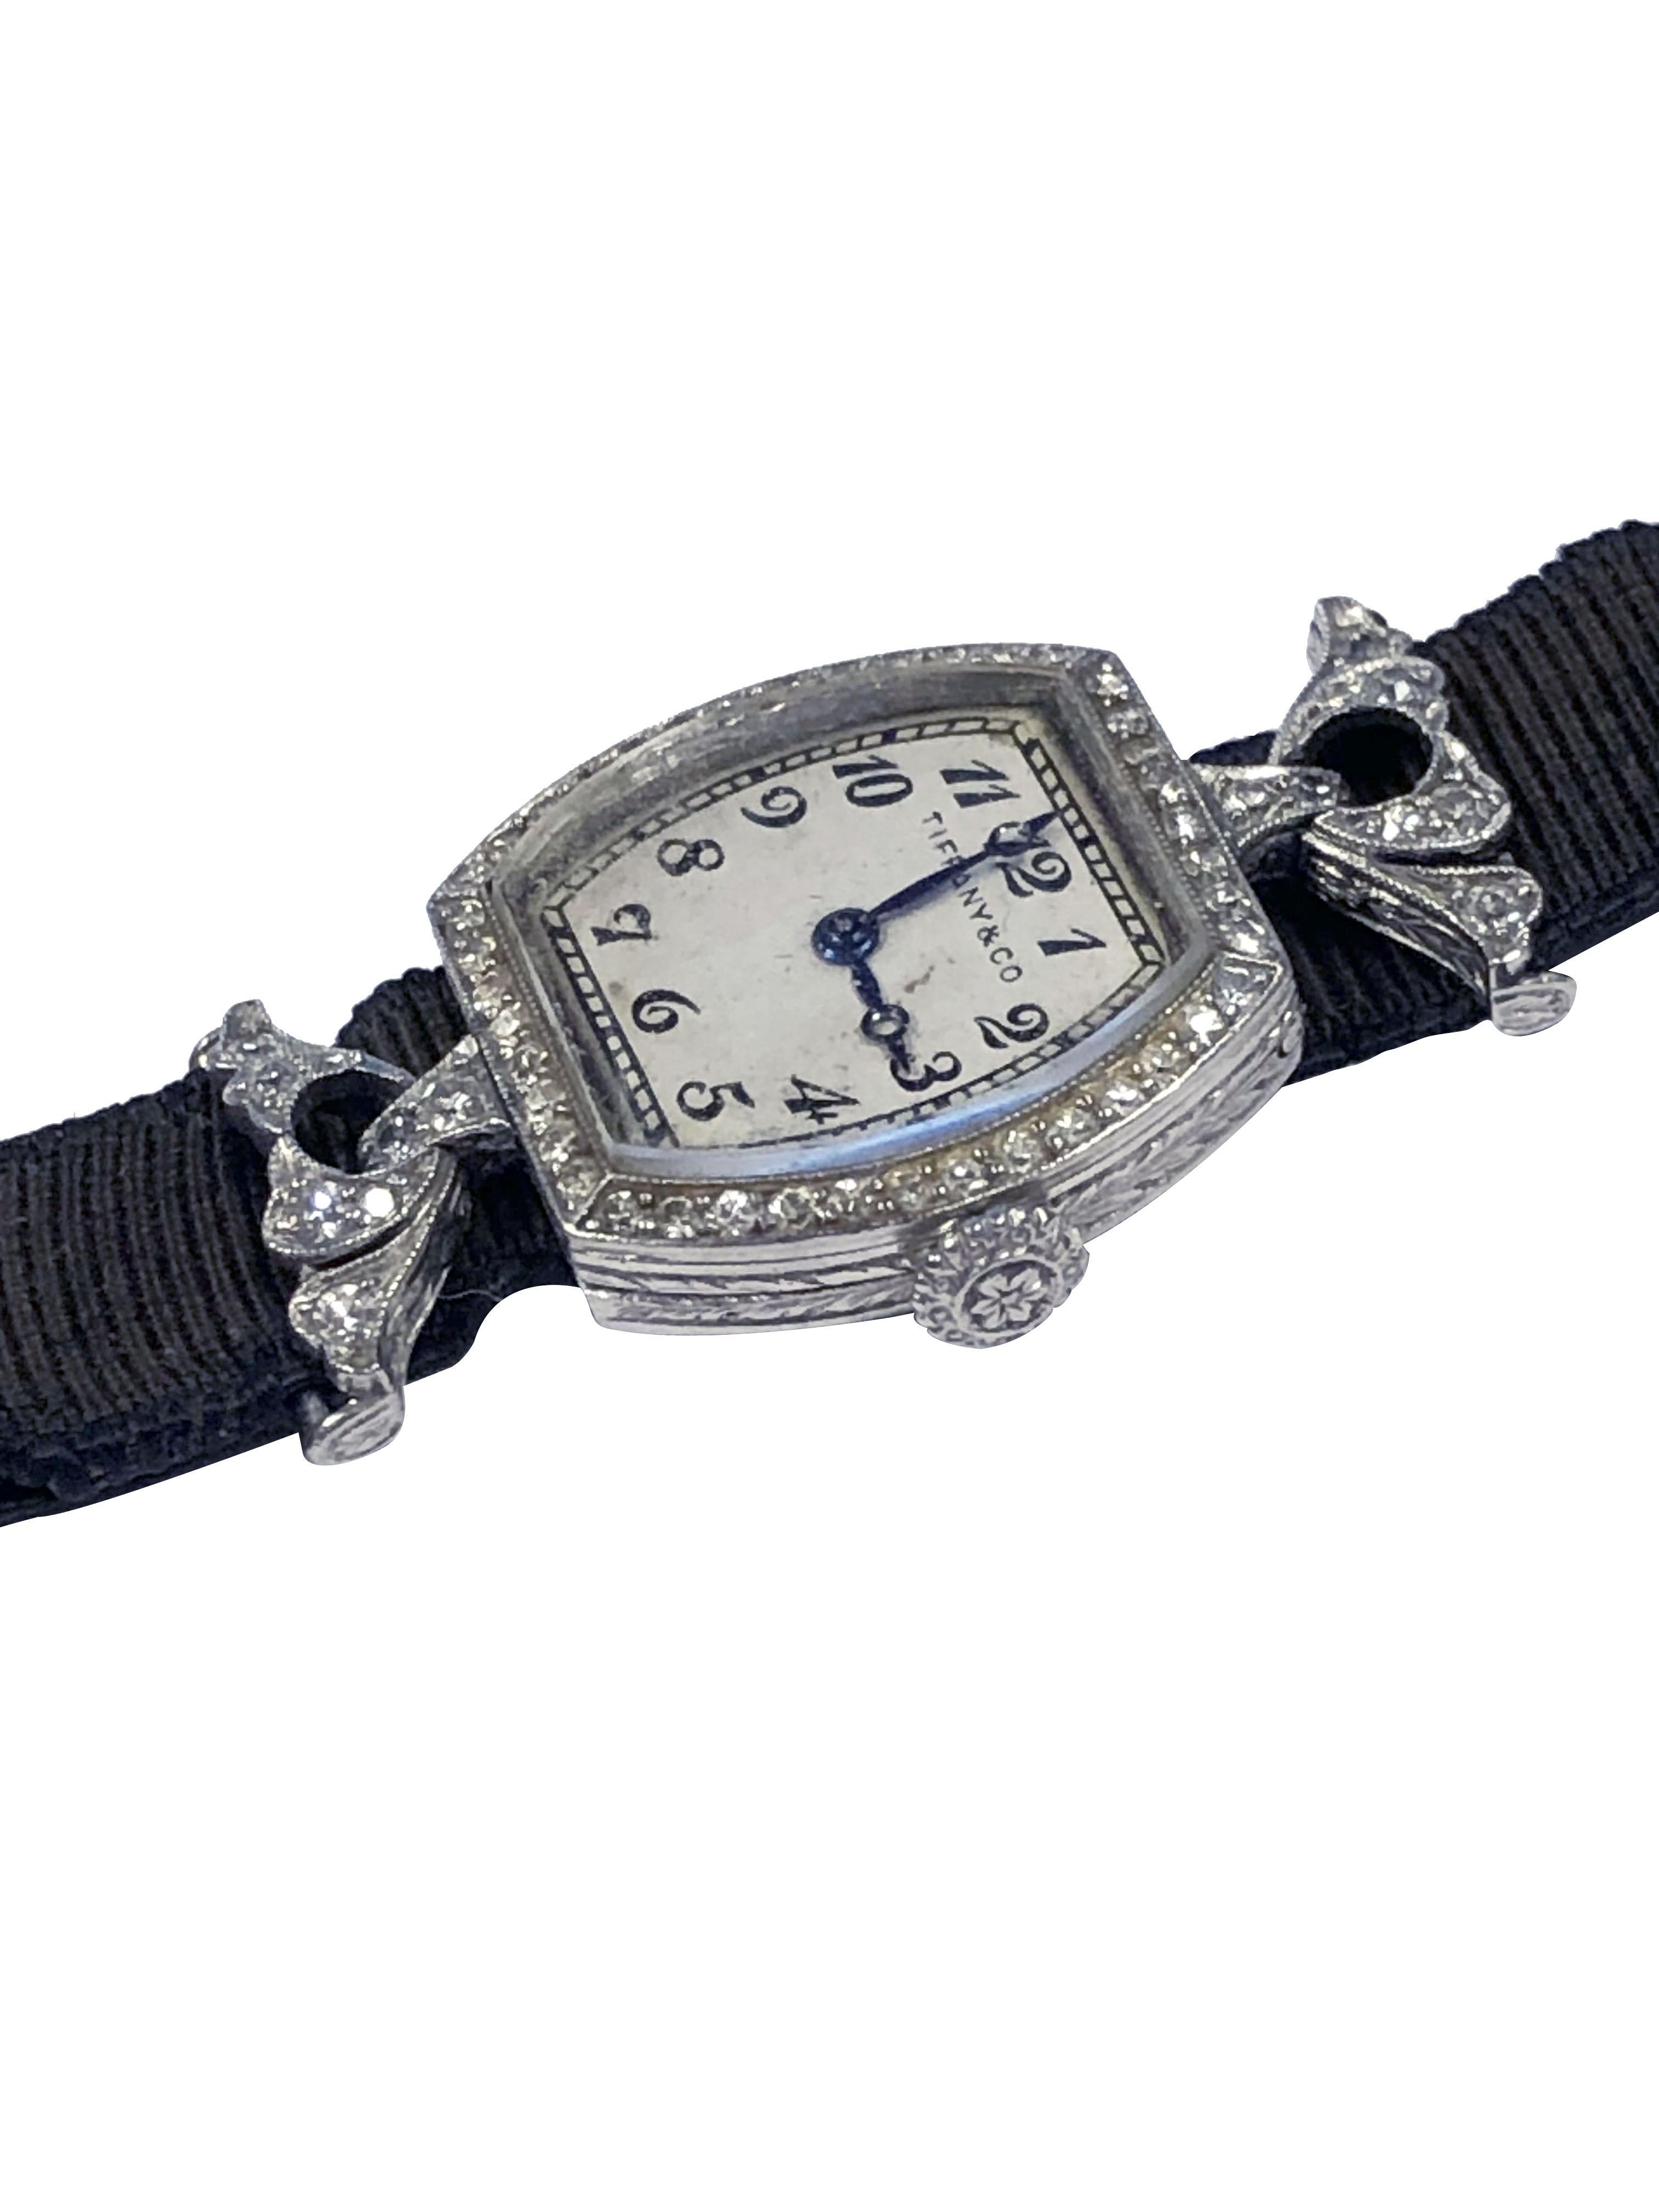 tiffany diamond watch